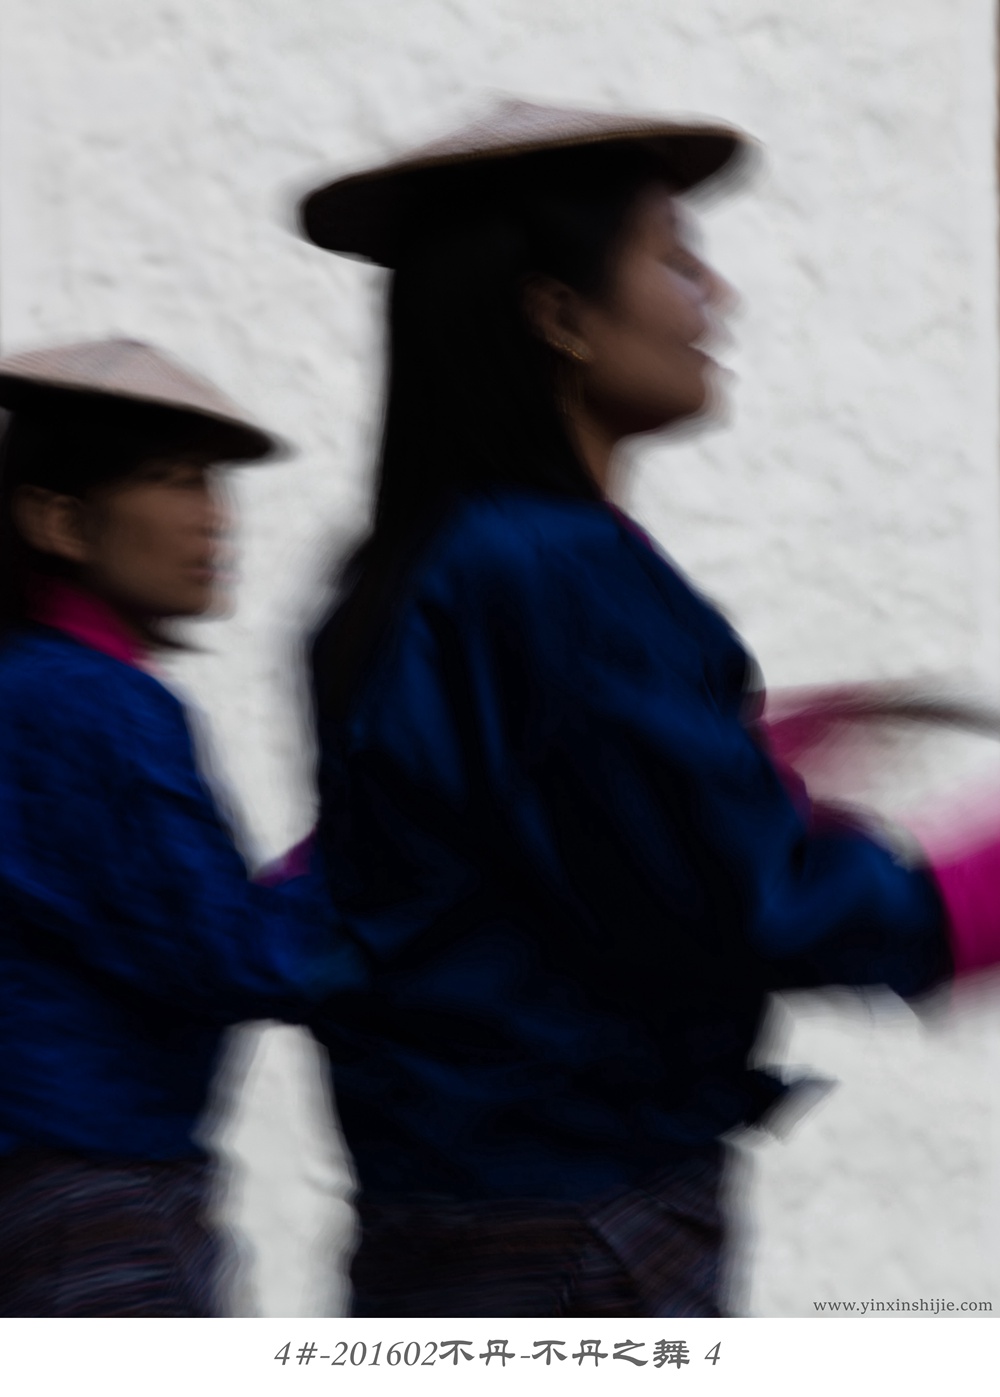 4#-201602不丹-不丹之舞4